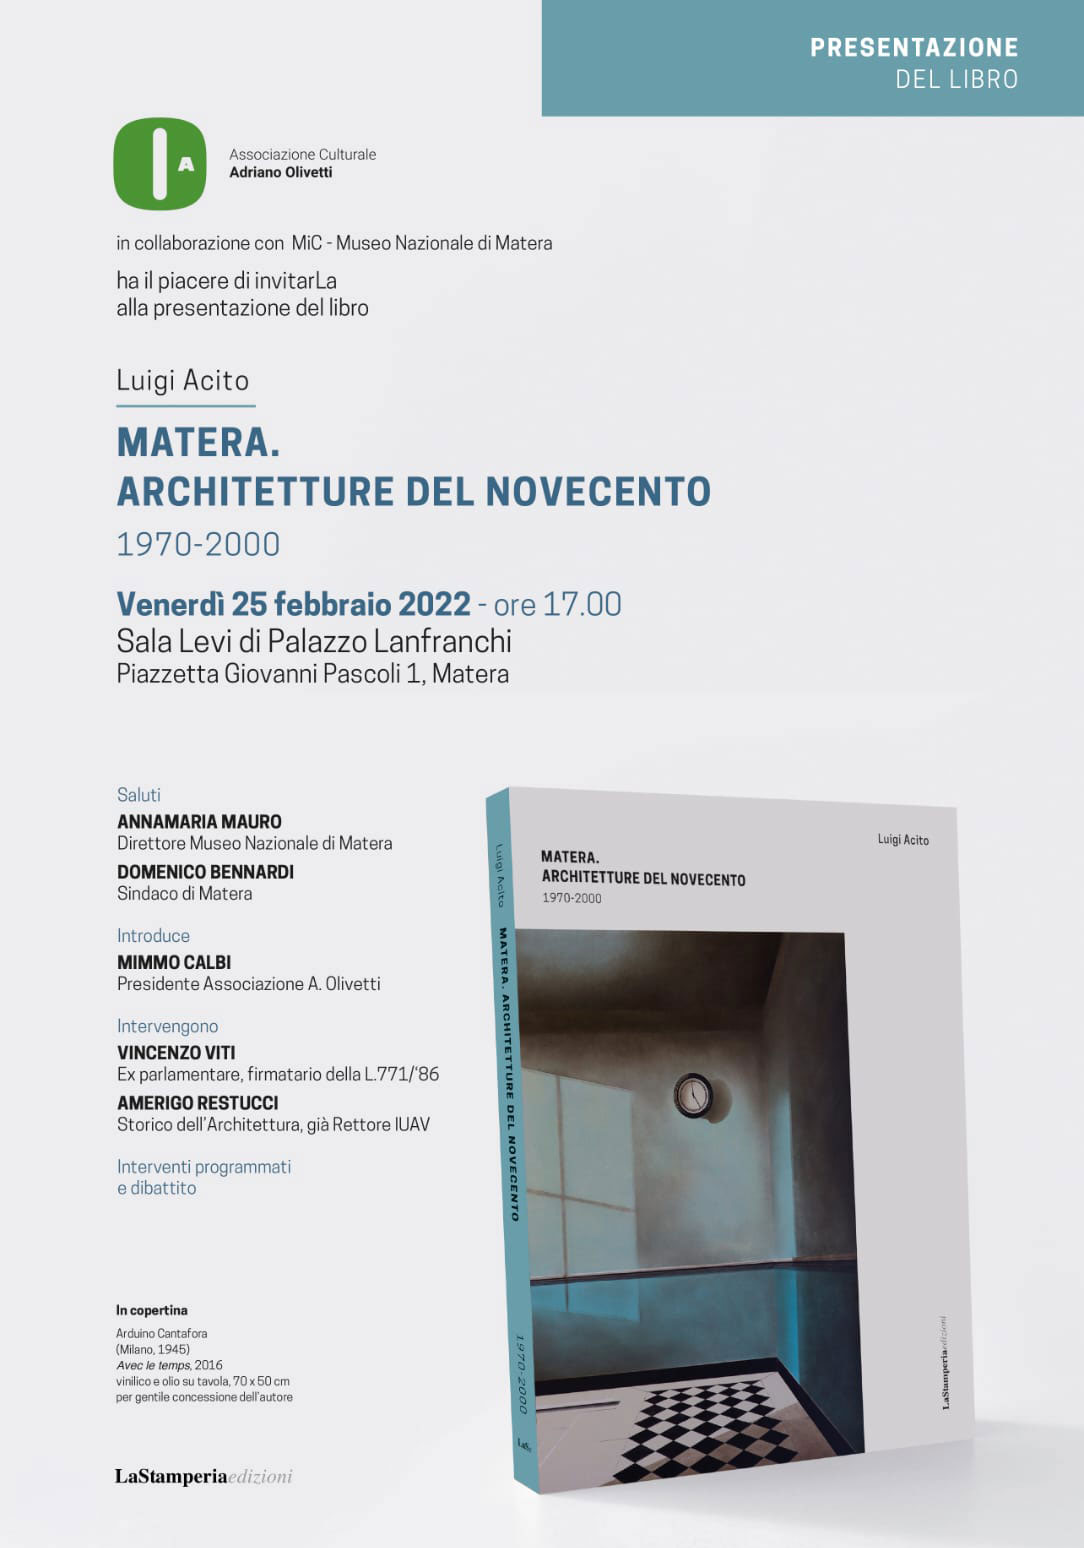 Presentazione del libro "Matera. Achitetture del Novecento 1970-2000" a Palazzo Lanfranchi